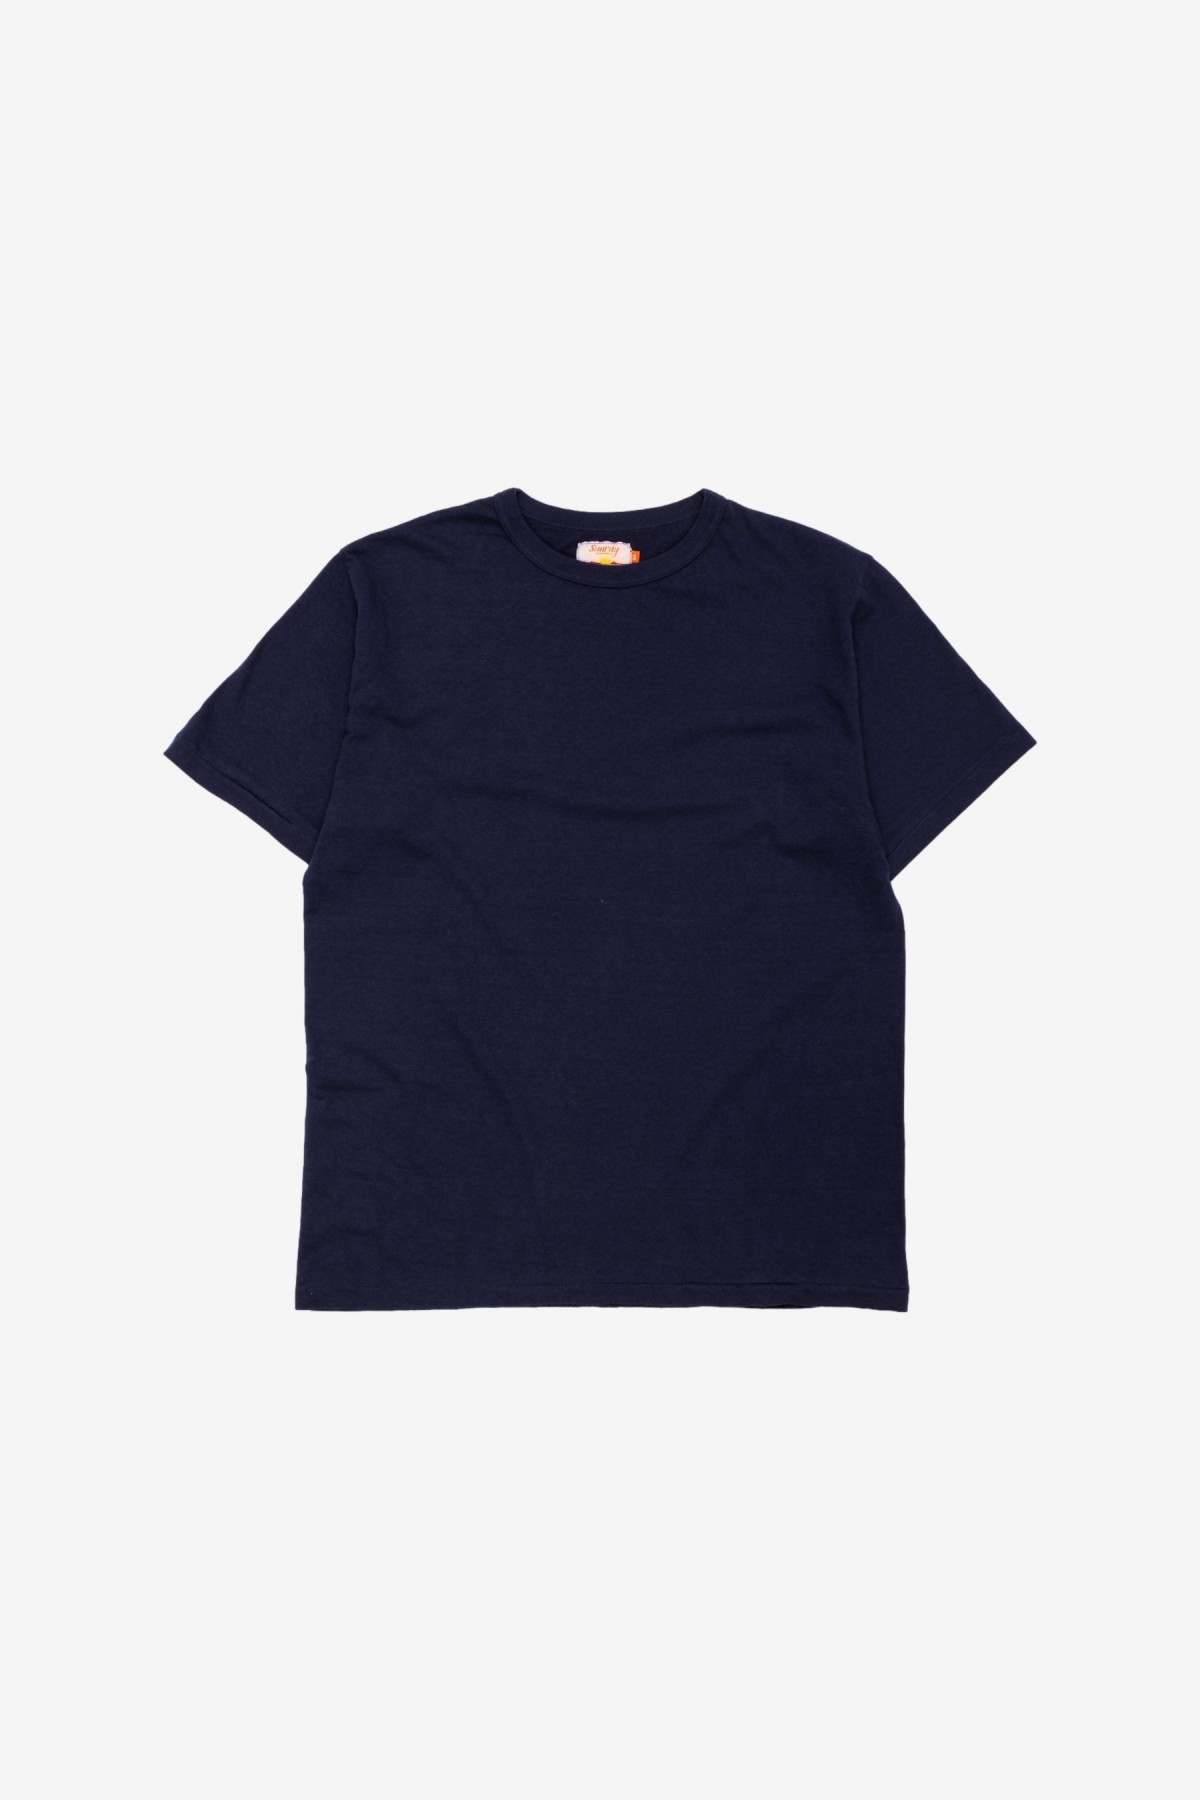 Sunray Sportswear Haleiwa Short Sleeve T-Shirt in Dark Navy